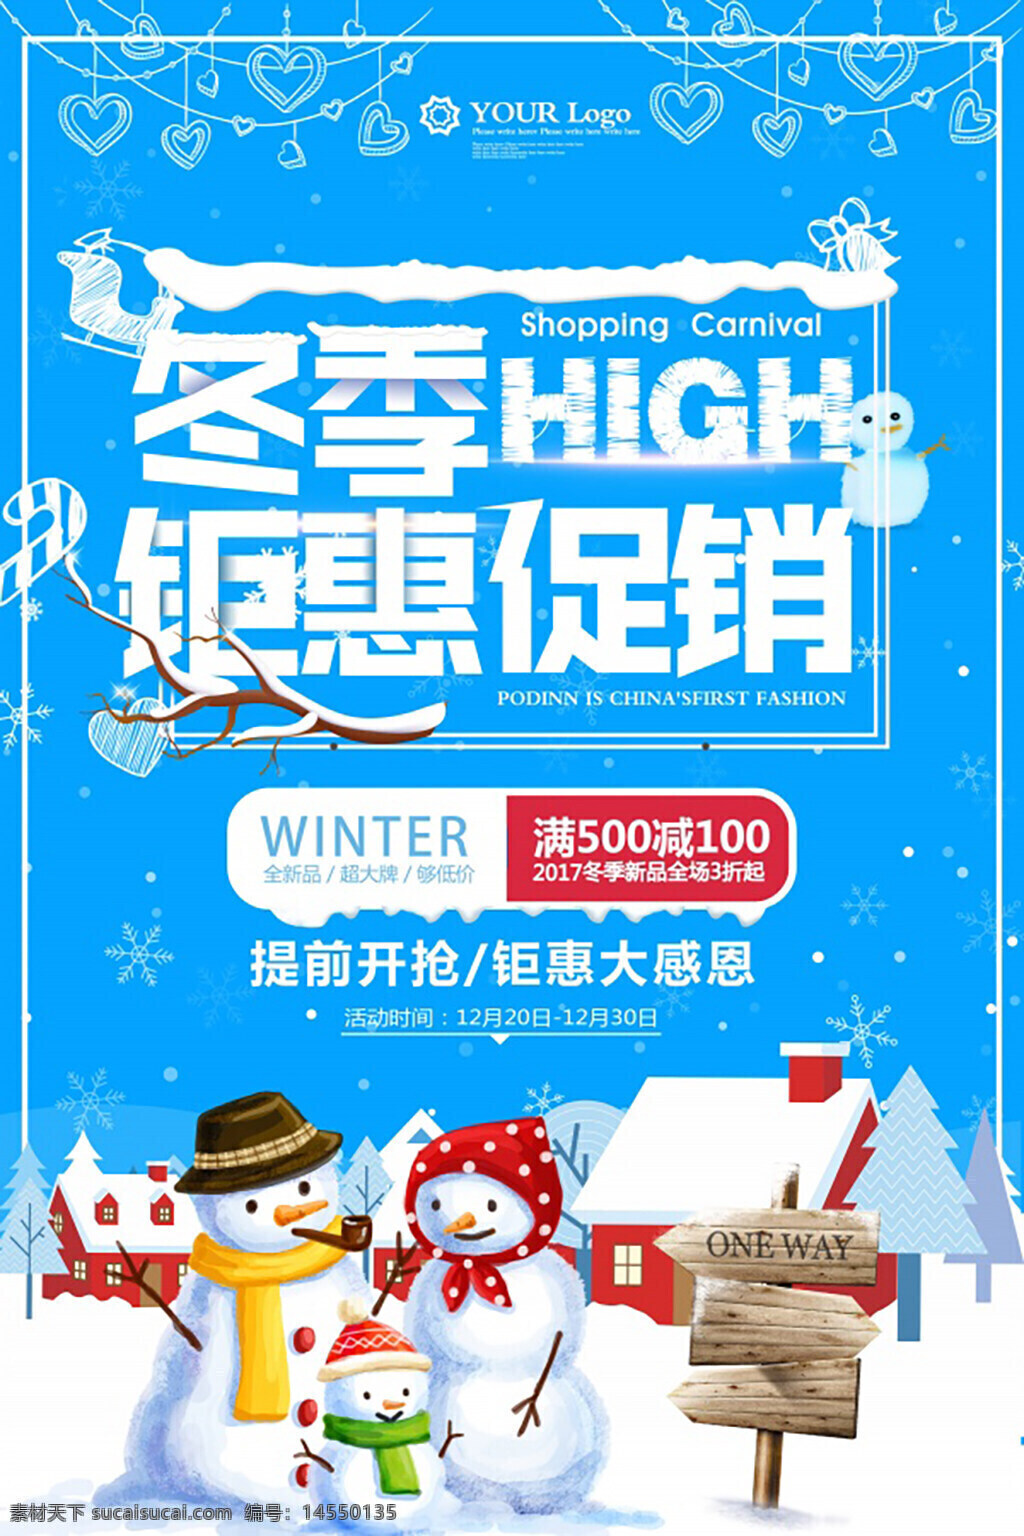 圣诞促销海报 圣诞促销广告 圣诞节 圣诞雪人 钜惠促销 堆雪人 雪人插画